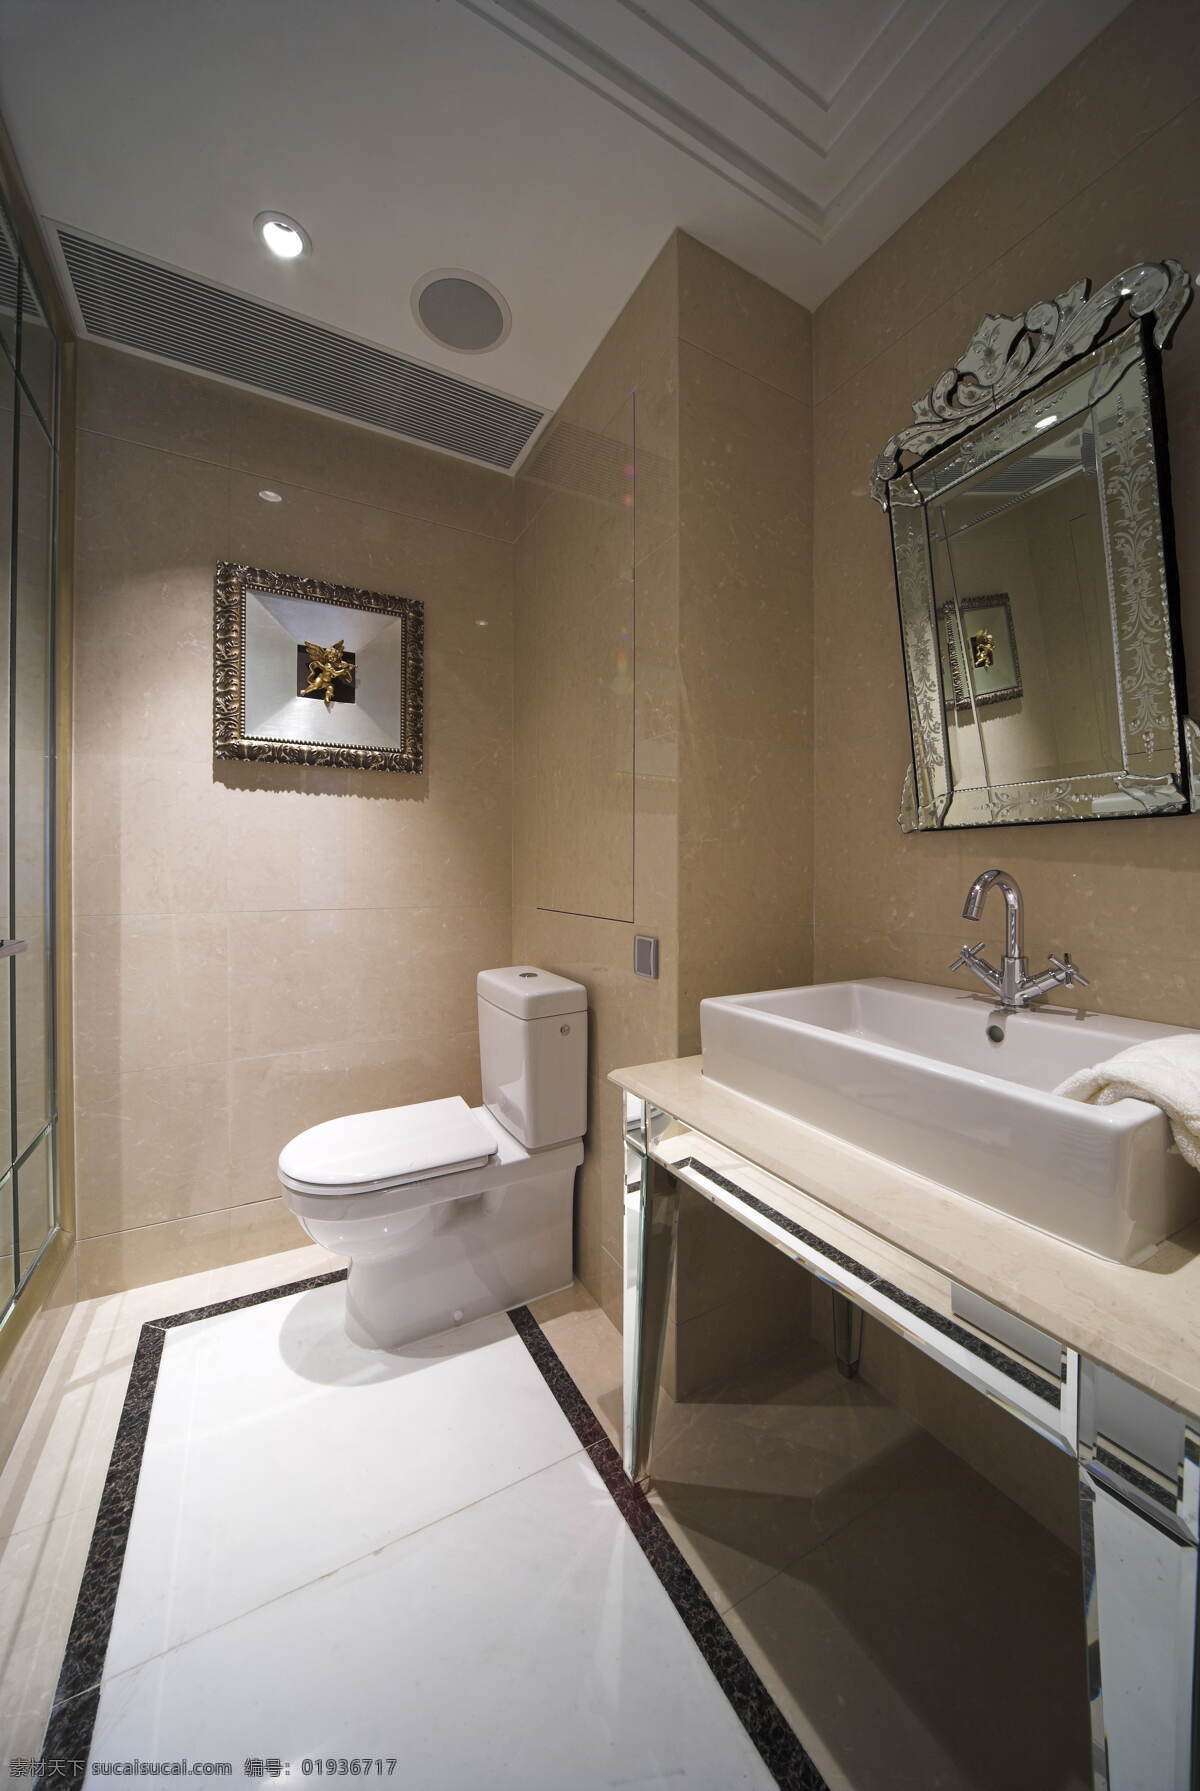 大 户型 简约 卫生间 室内装修 效果图 马桶 洗手台 铜镜 卫生间装修 瓷砖地板